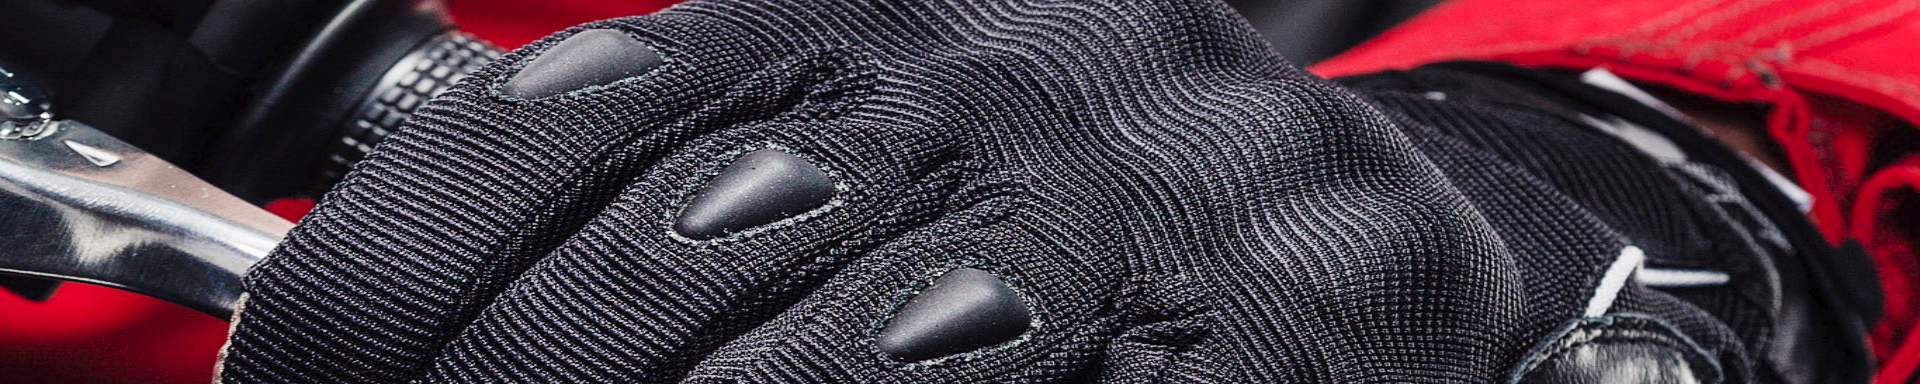 Gloves | MunroPowersports.com | Munro Industries mp-1008030308